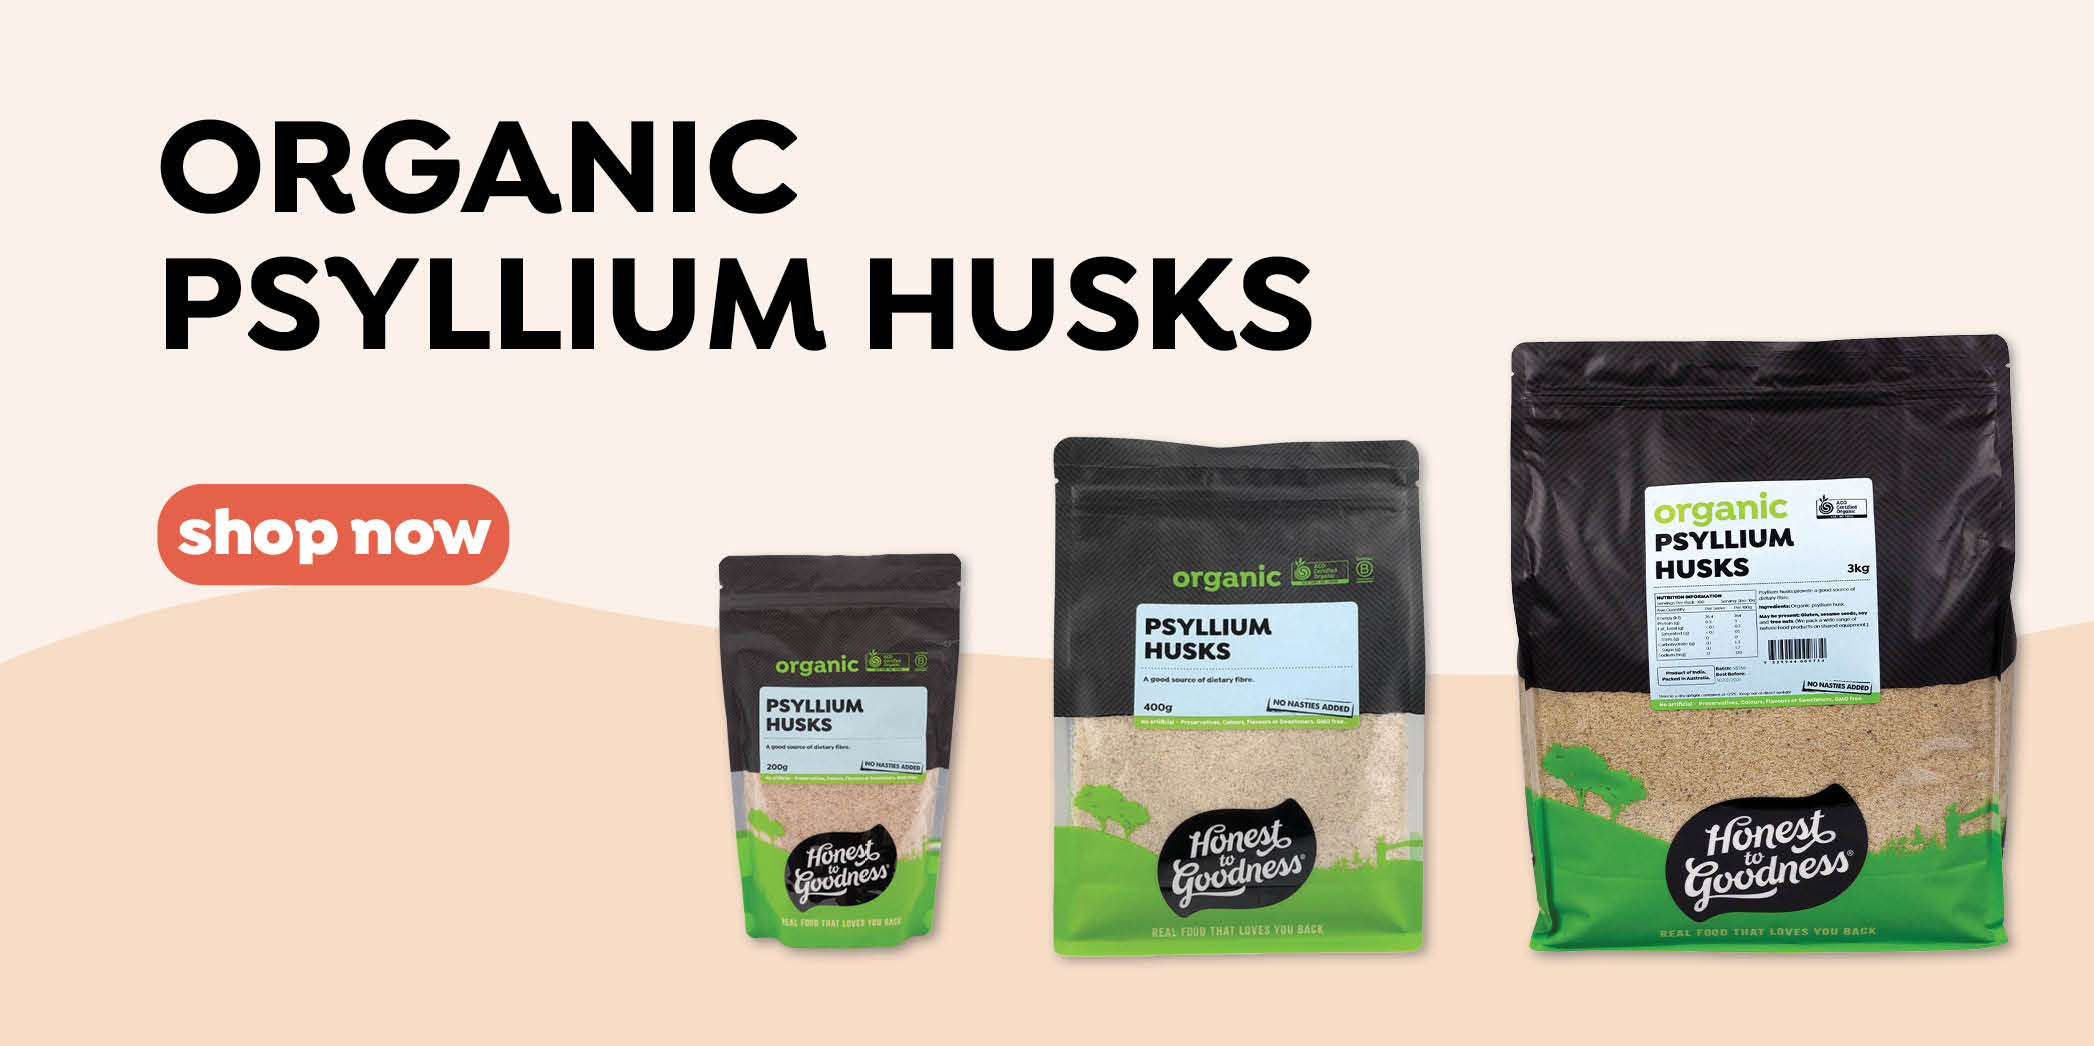 Bestselling Organic Psyllium Husks Range